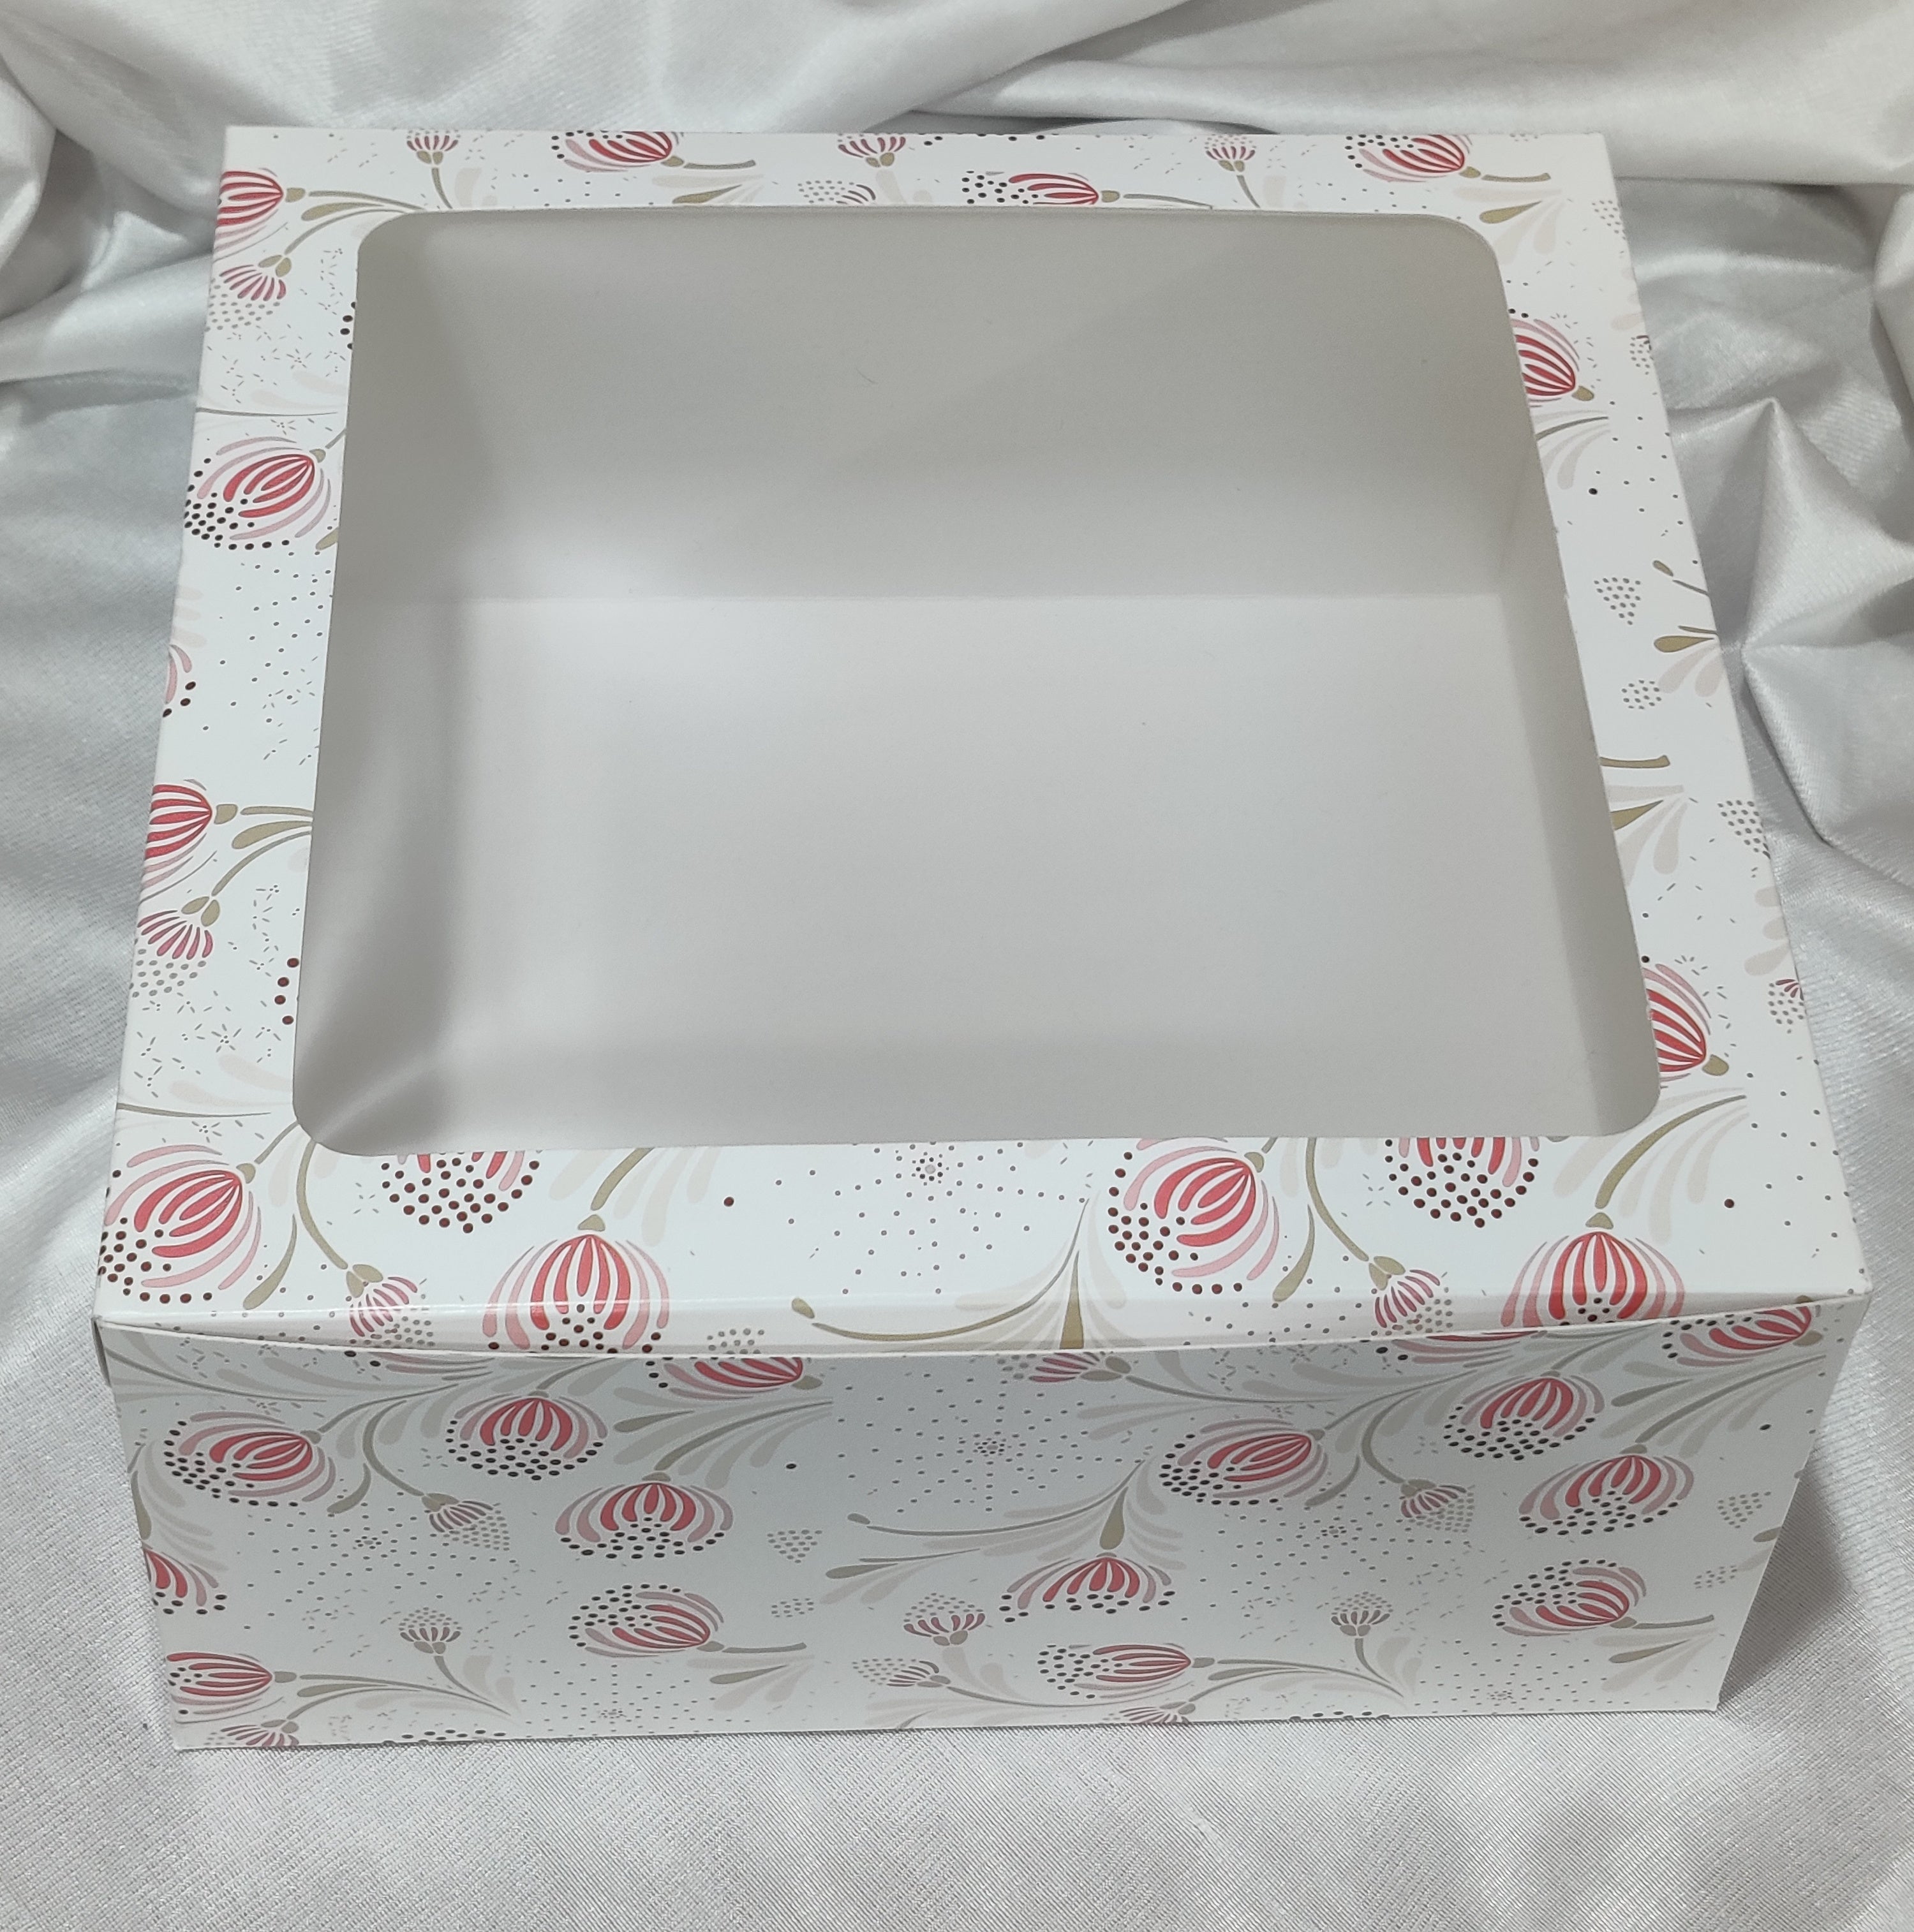 Transparent cake boxes - DVINA online shopping for household utensils home  decor flowers